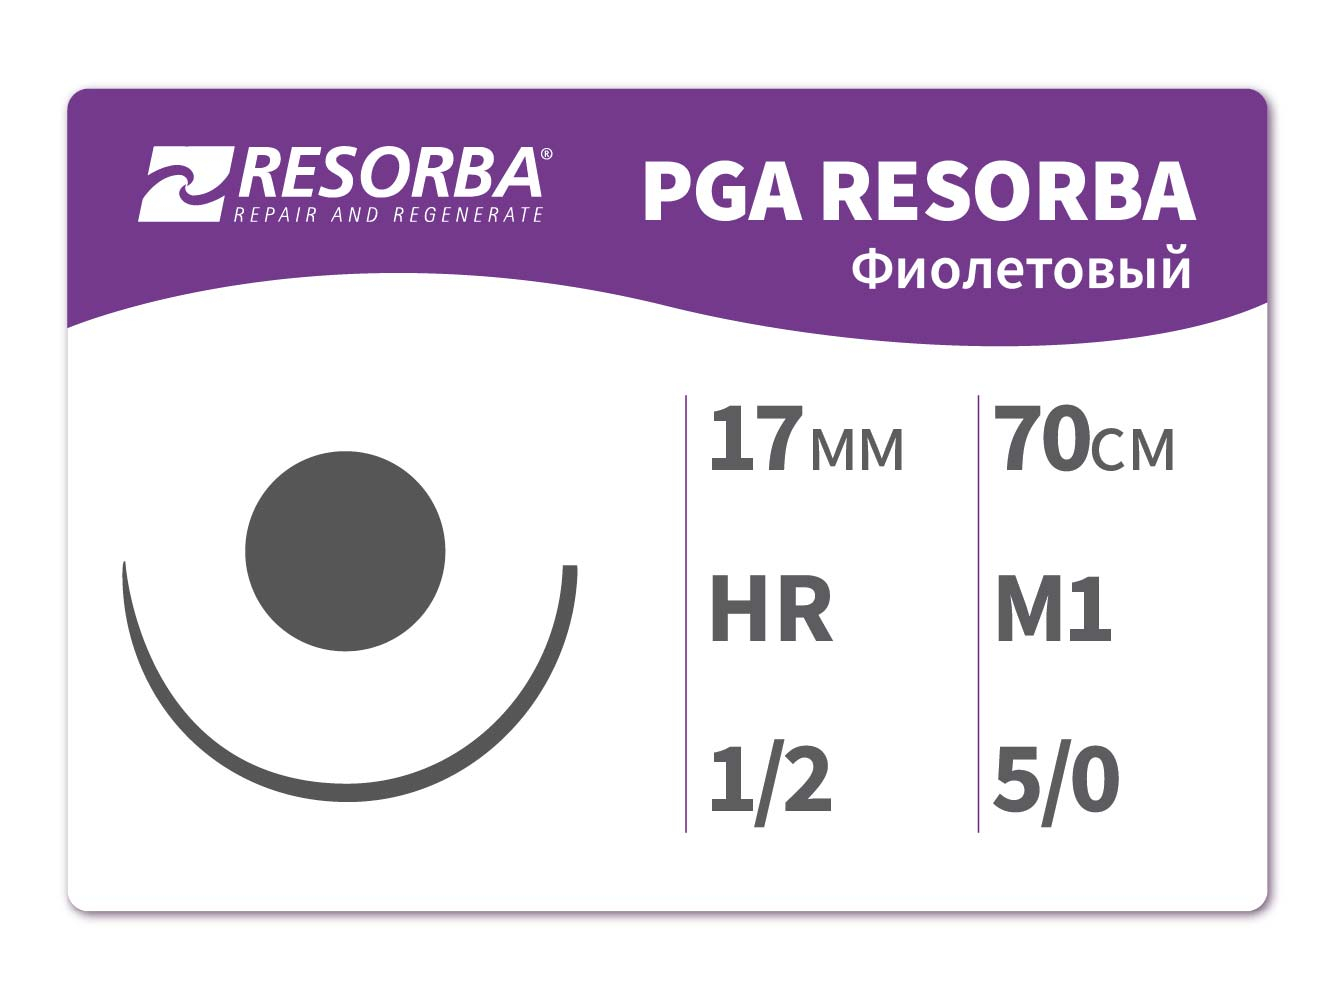 PA1024 ПГА-Ресорба фиолетовая М1 (5/0) 70 см HR17, RESORBA (Германия)